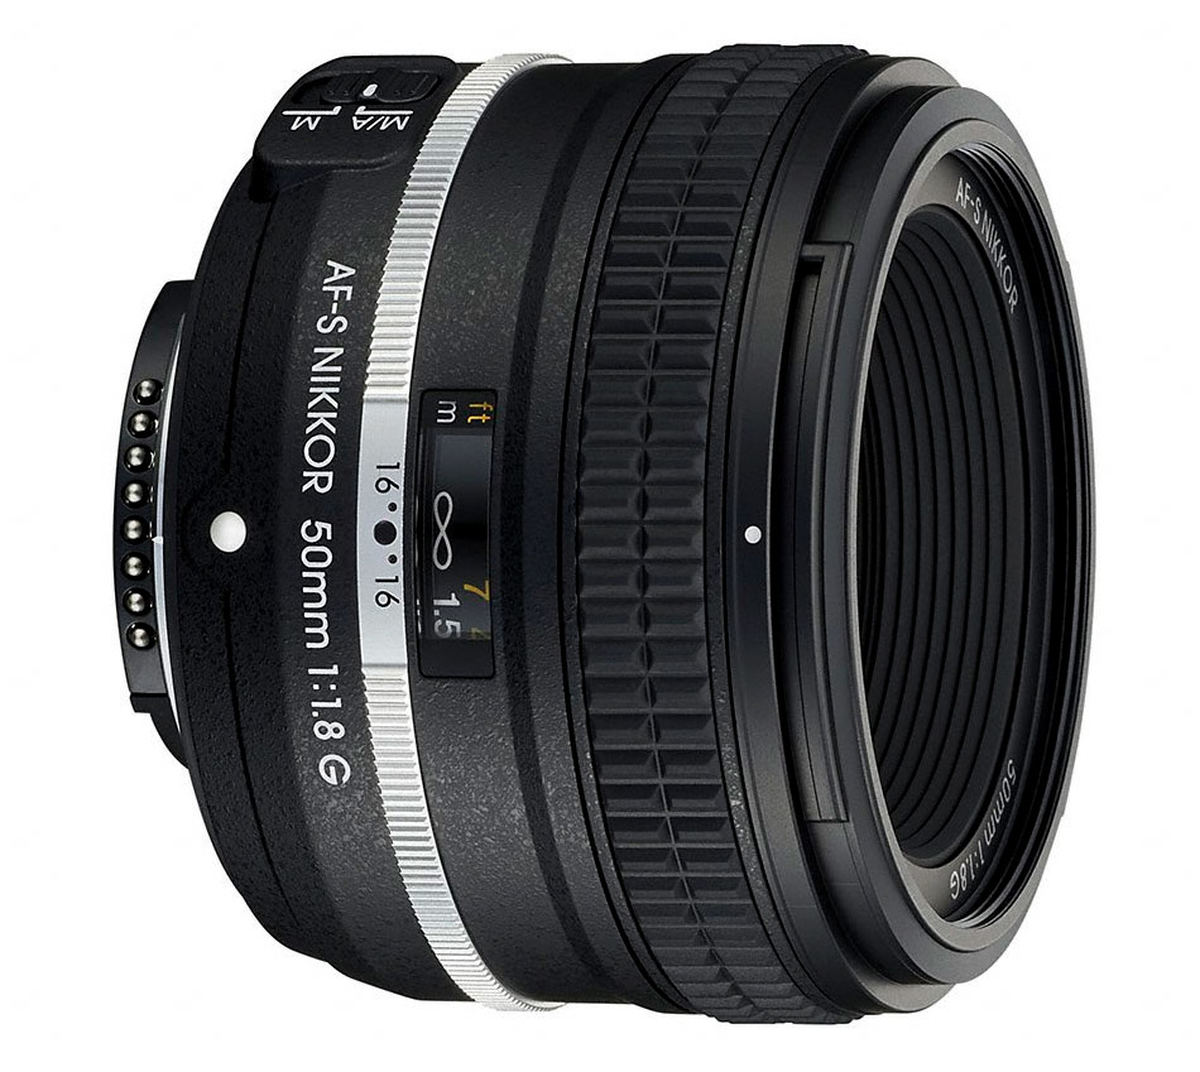 Nikon AF-S 50mm f/1.8 G Special Edition : Caratteristiche e Opinioni |  JuzaPhoto